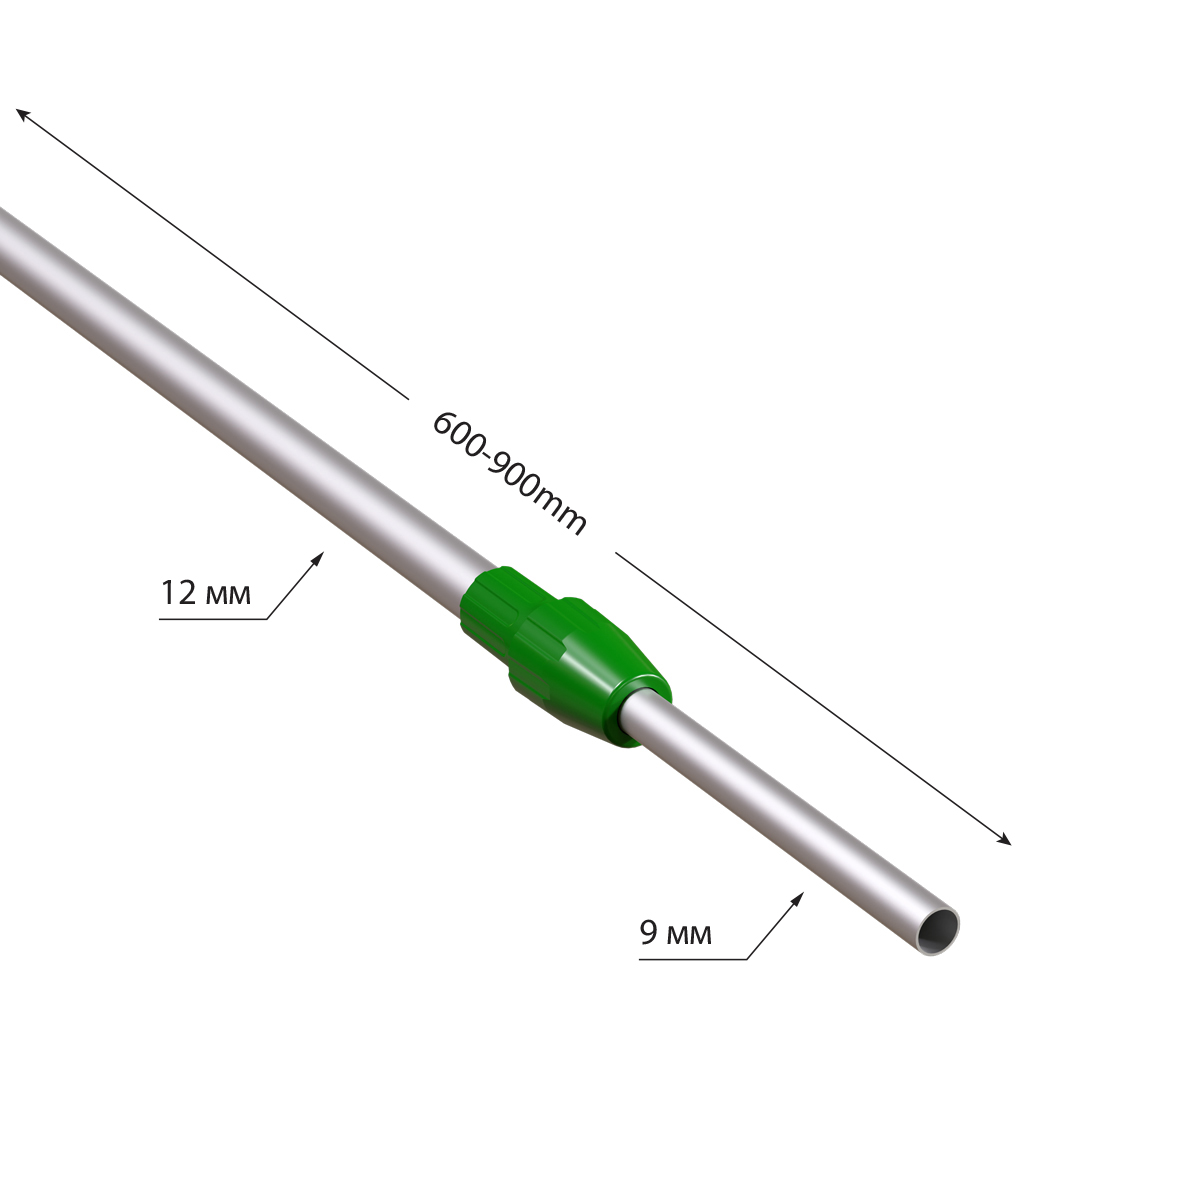 Трубка алюминиевая телескопическая TEL-LOCK-ALUTUBE 600-900 мм, цвет серый, переходник зеленый